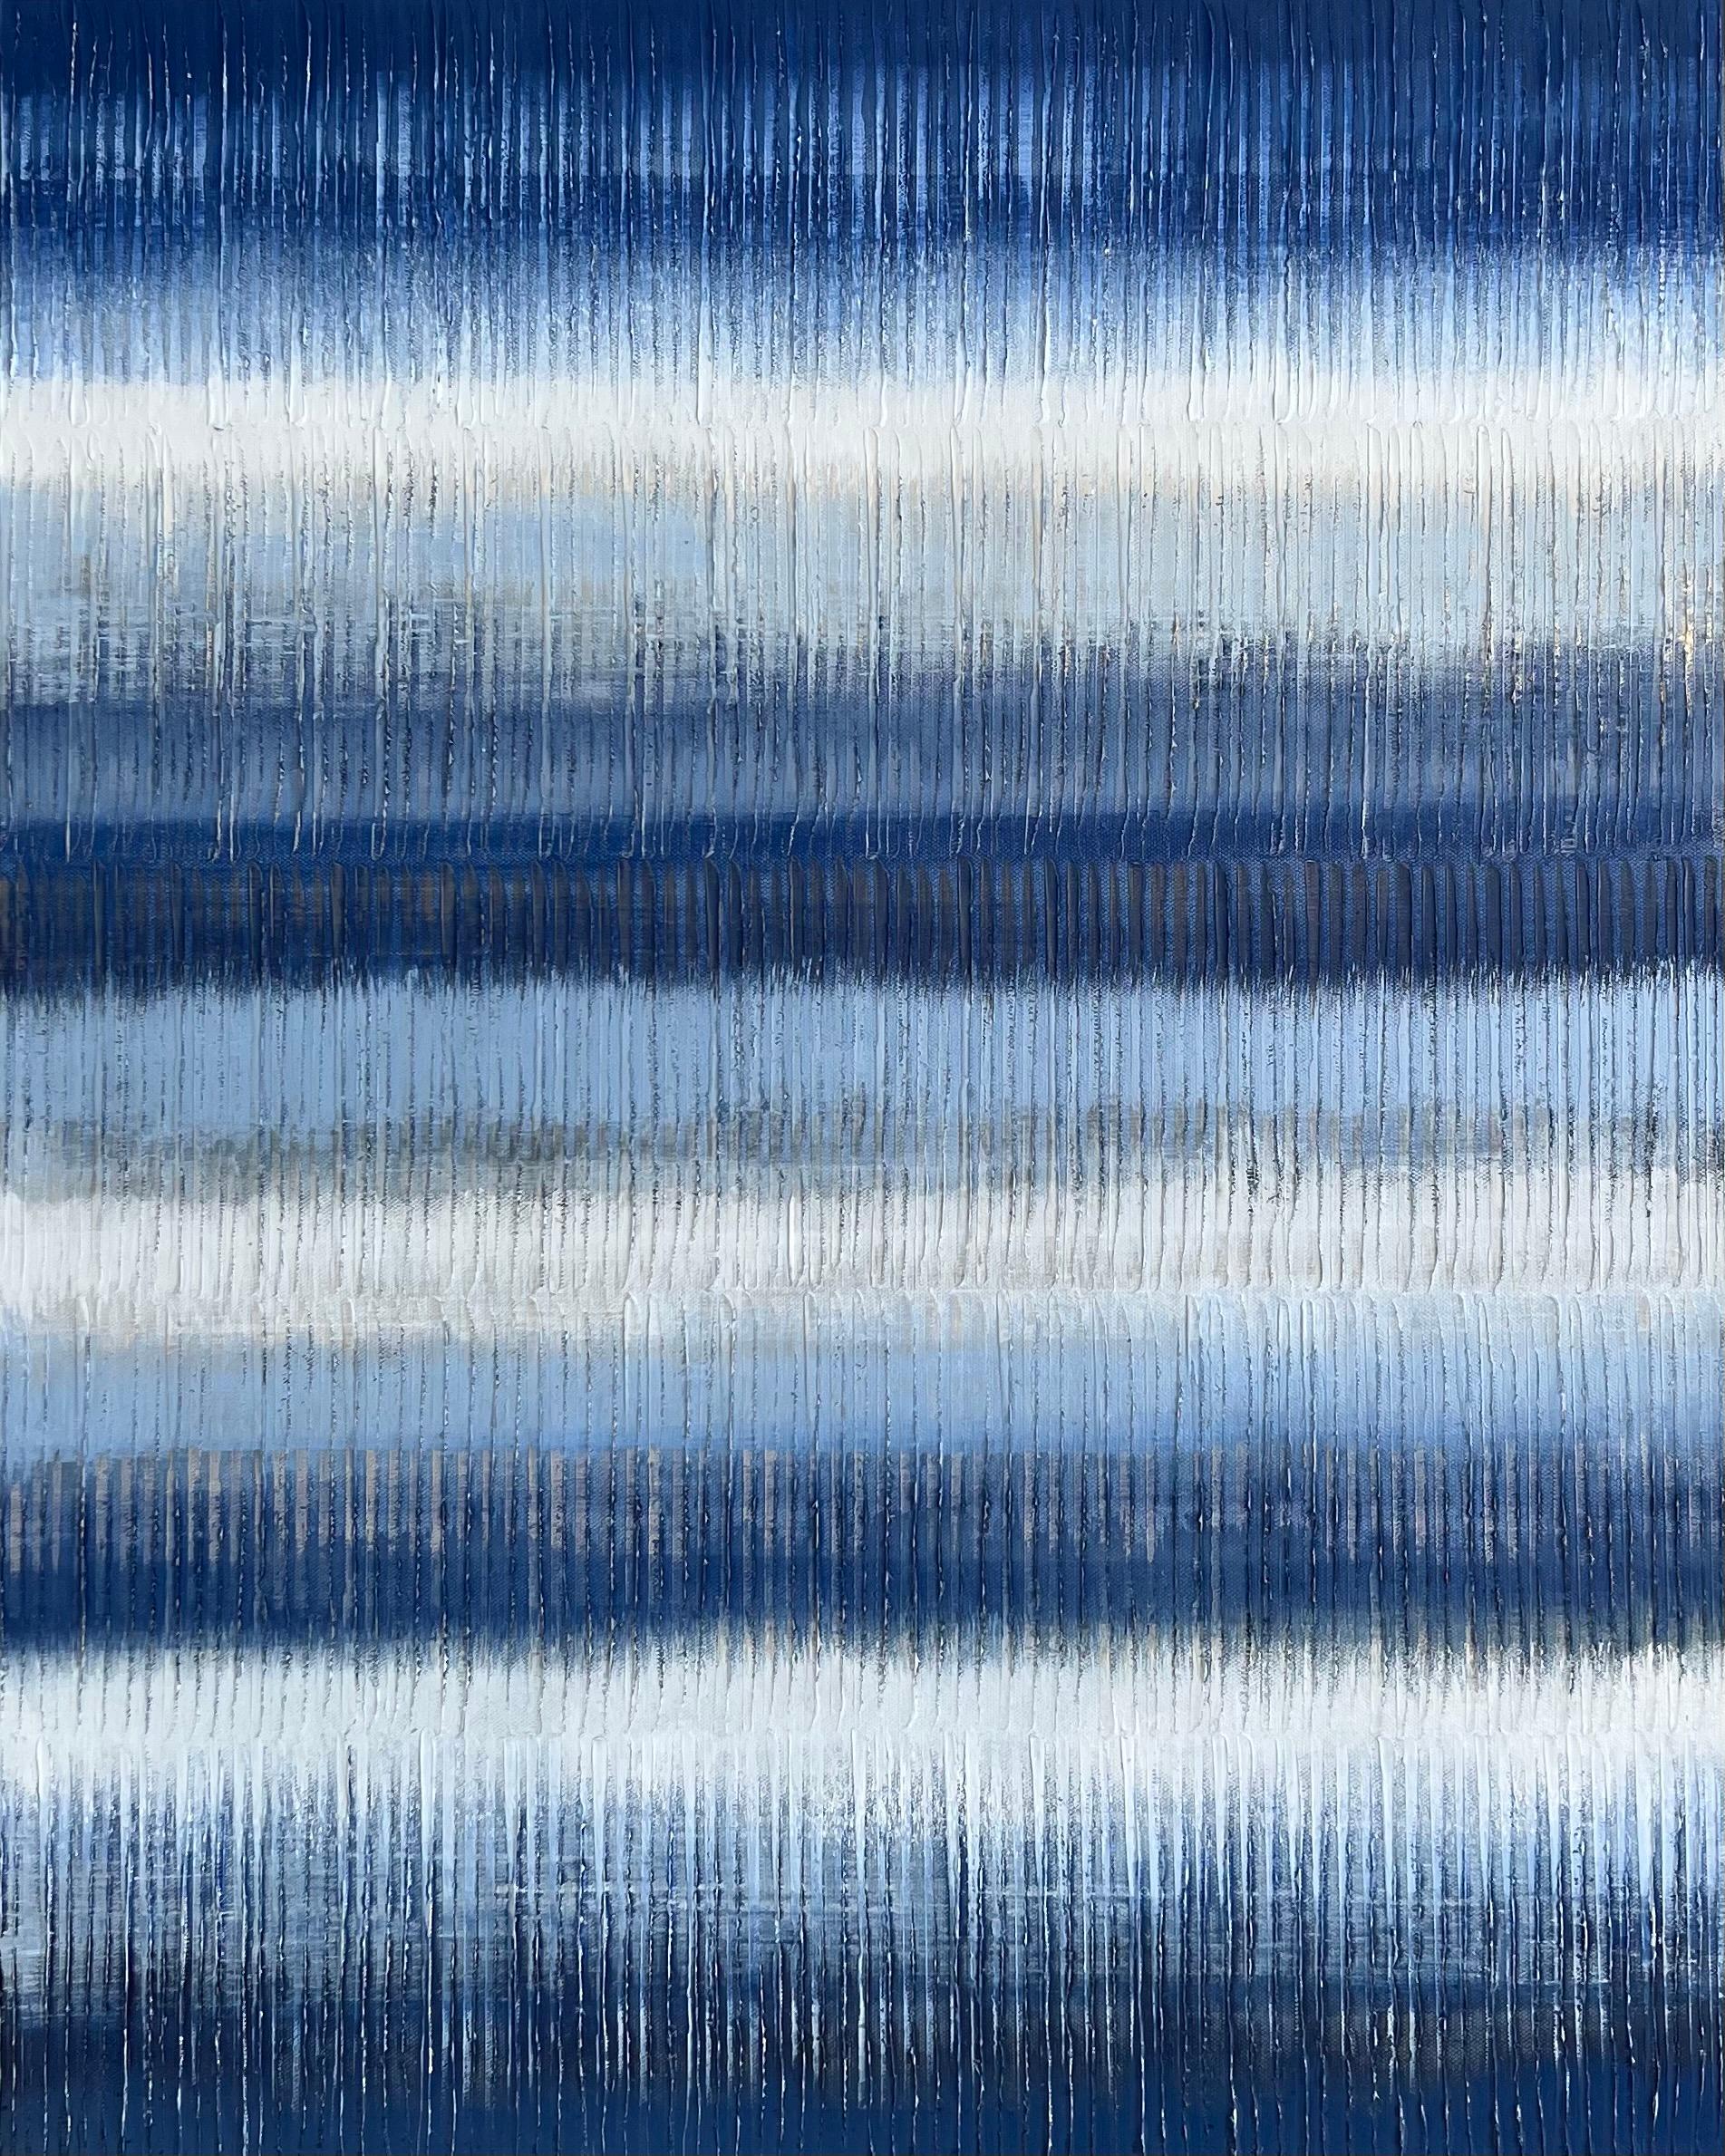 Abstract Painting Janet Hamilton - Peinture à l'huile abstraite - Indigo Stripes 2